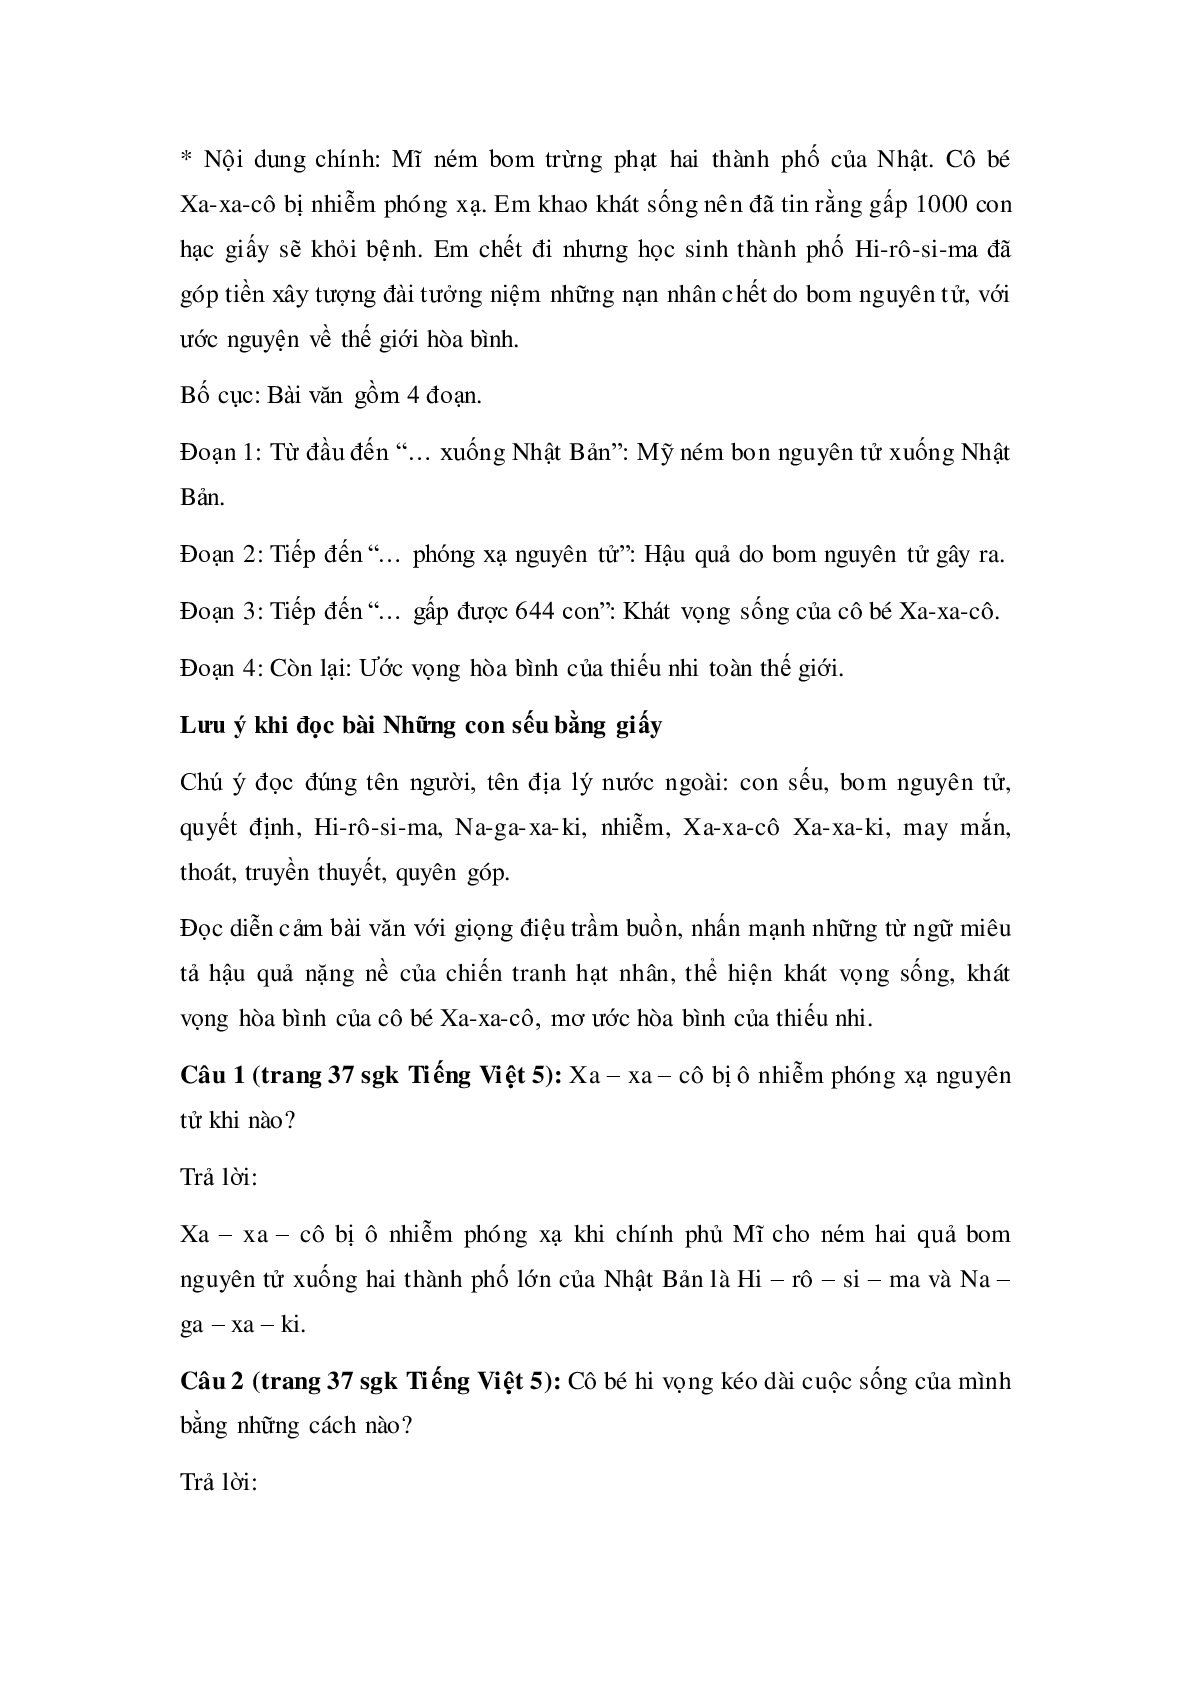 Soạn Tiếng Việt lớp 5: Tập đọc: Những con sếu bằng giấy mới nhất (trang 2)